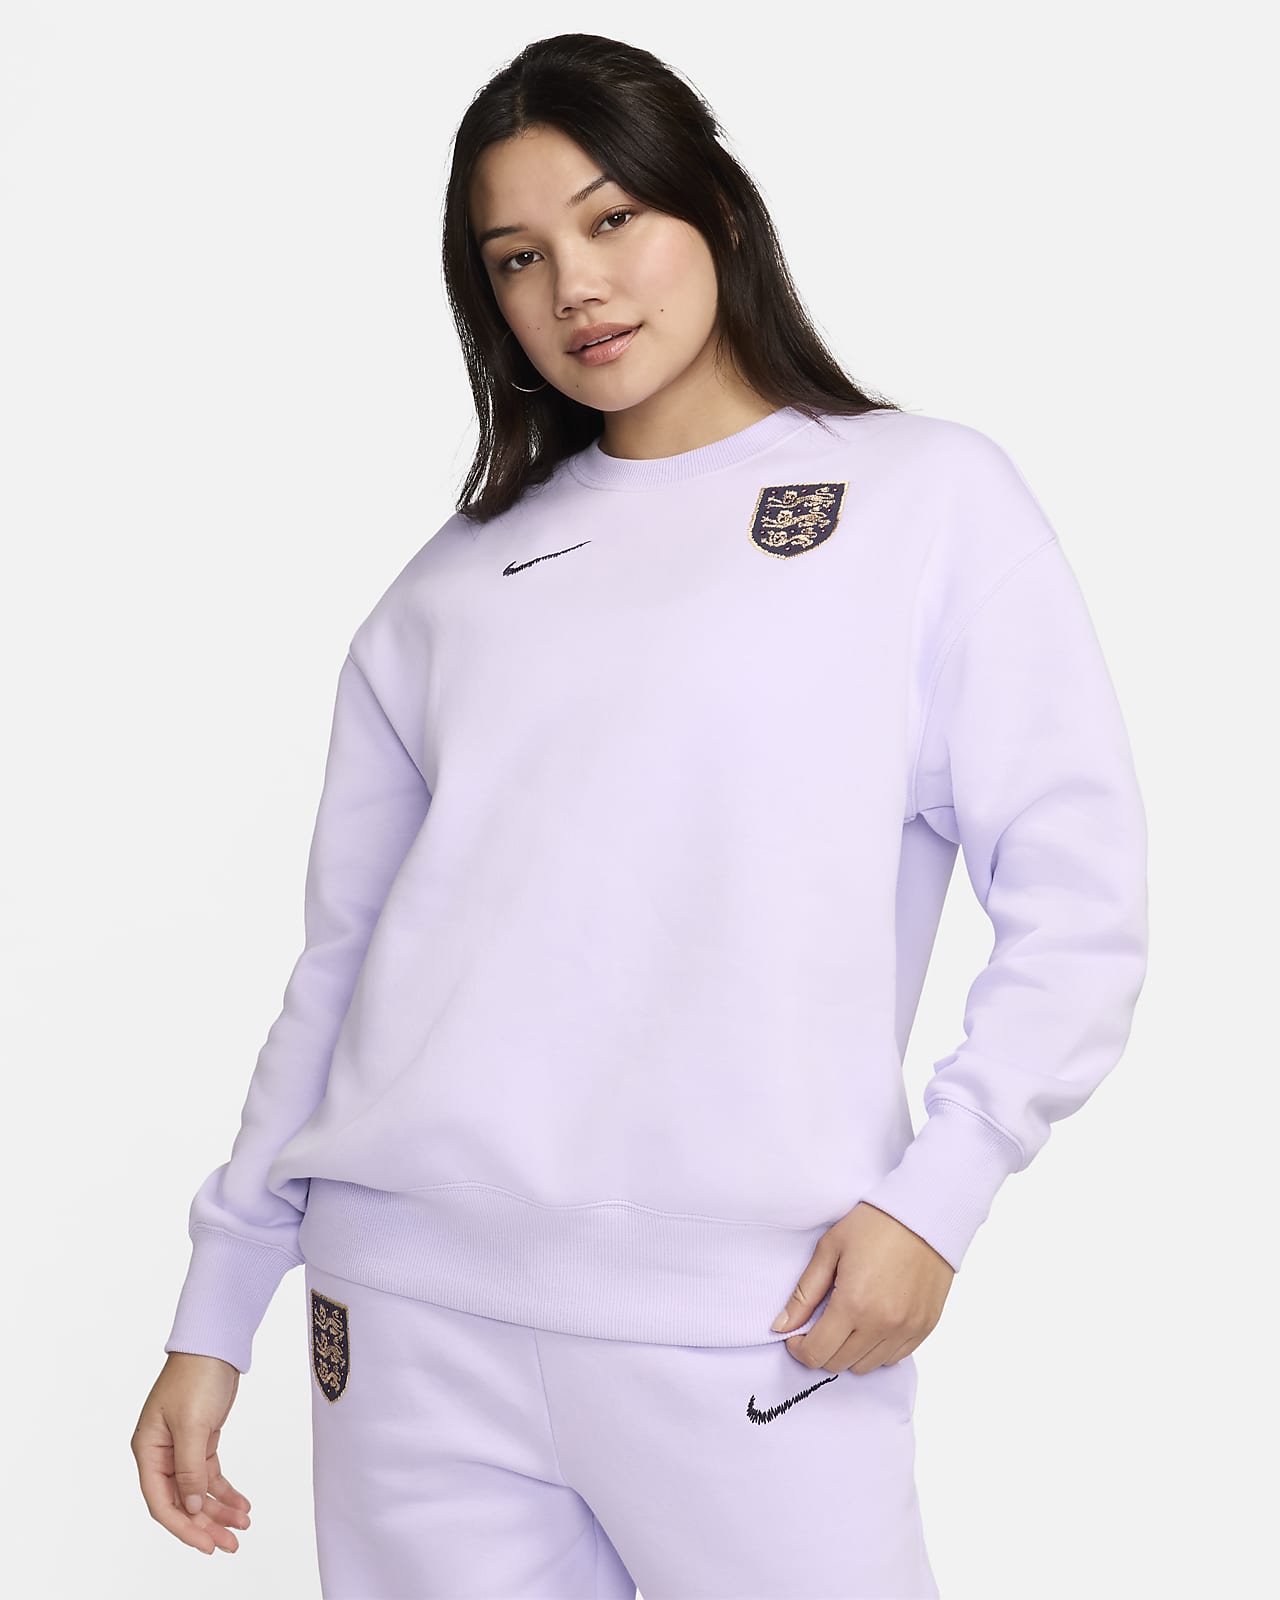 Engeland Phoenix Fleece Nike oversized voetbalsweatshirt met ronde hals voor dames